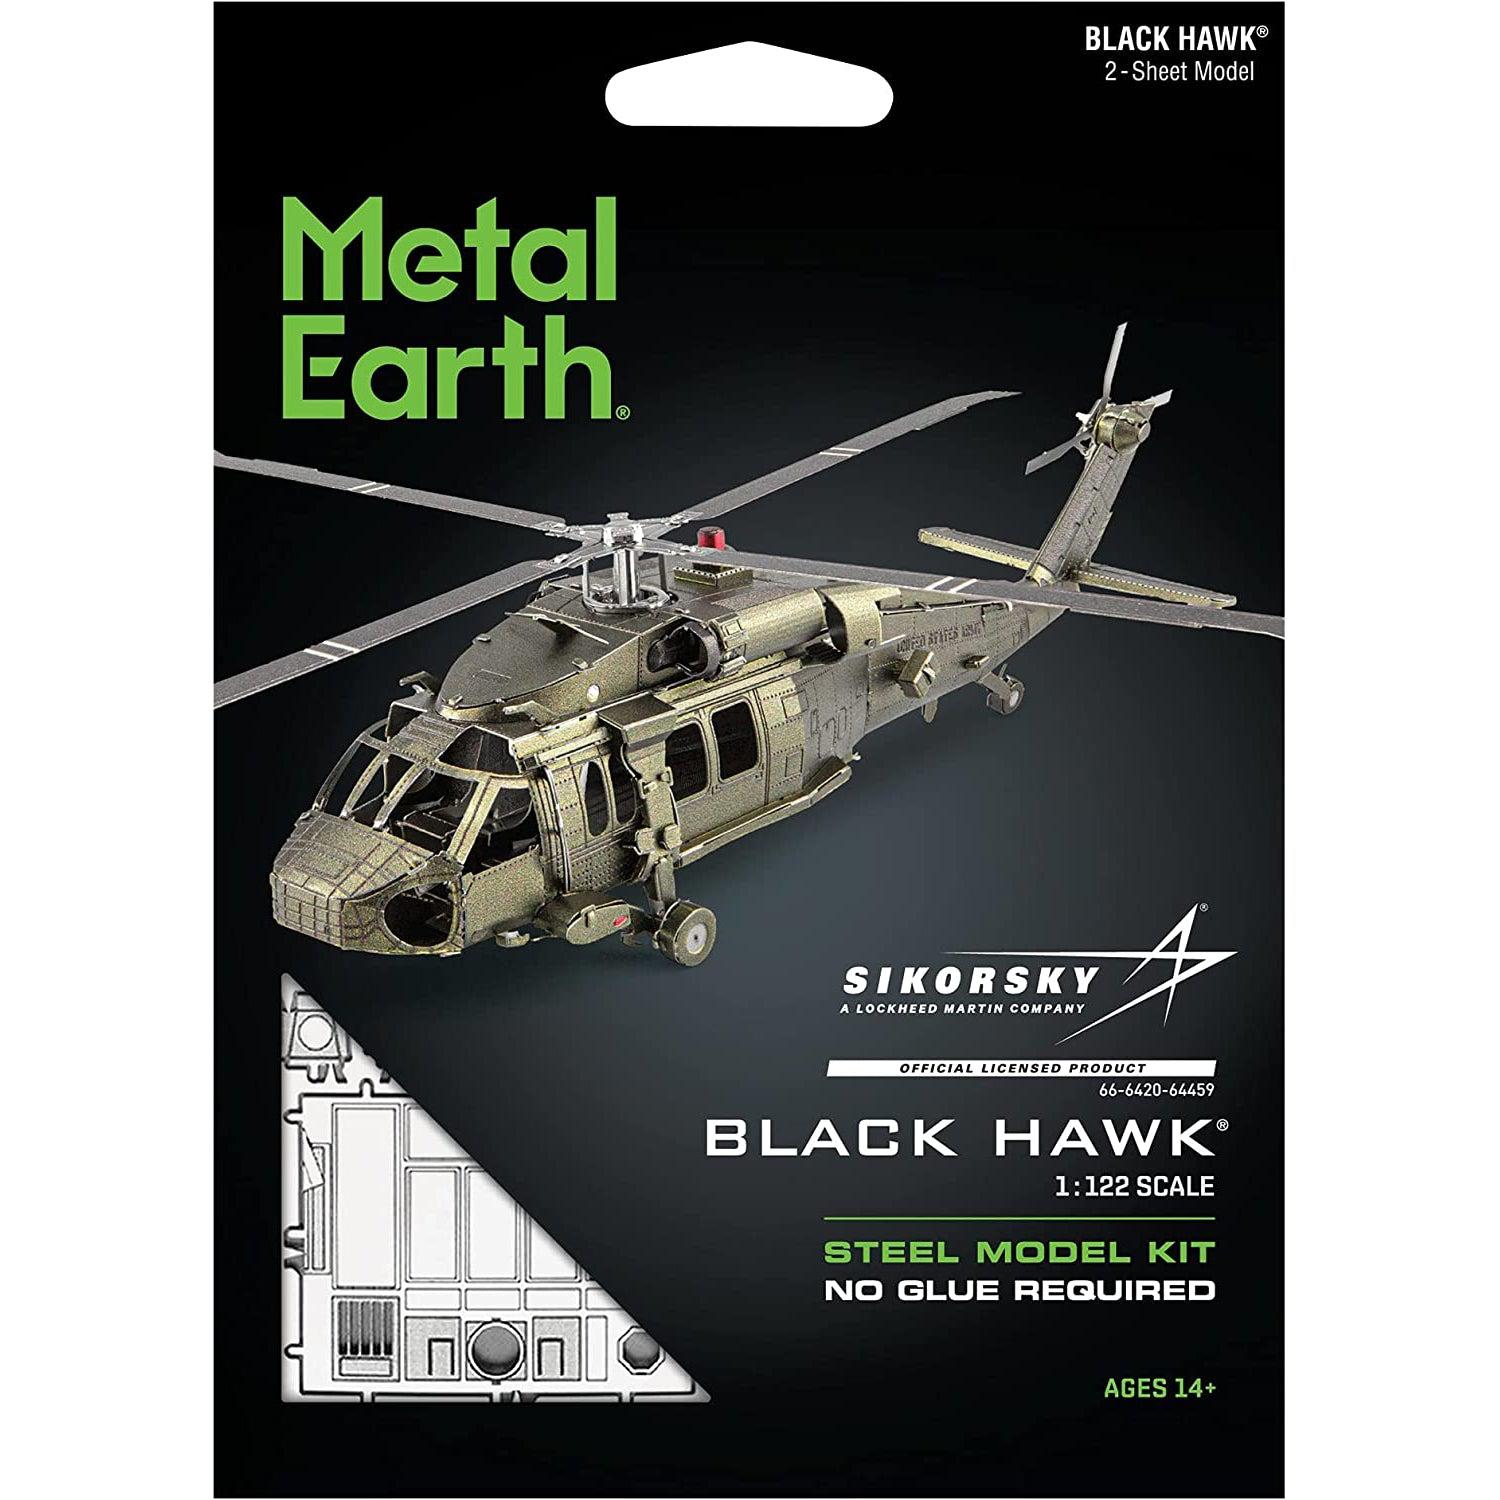 Black Hawk Helicopter 3D Steel Model Kit Metal Earth